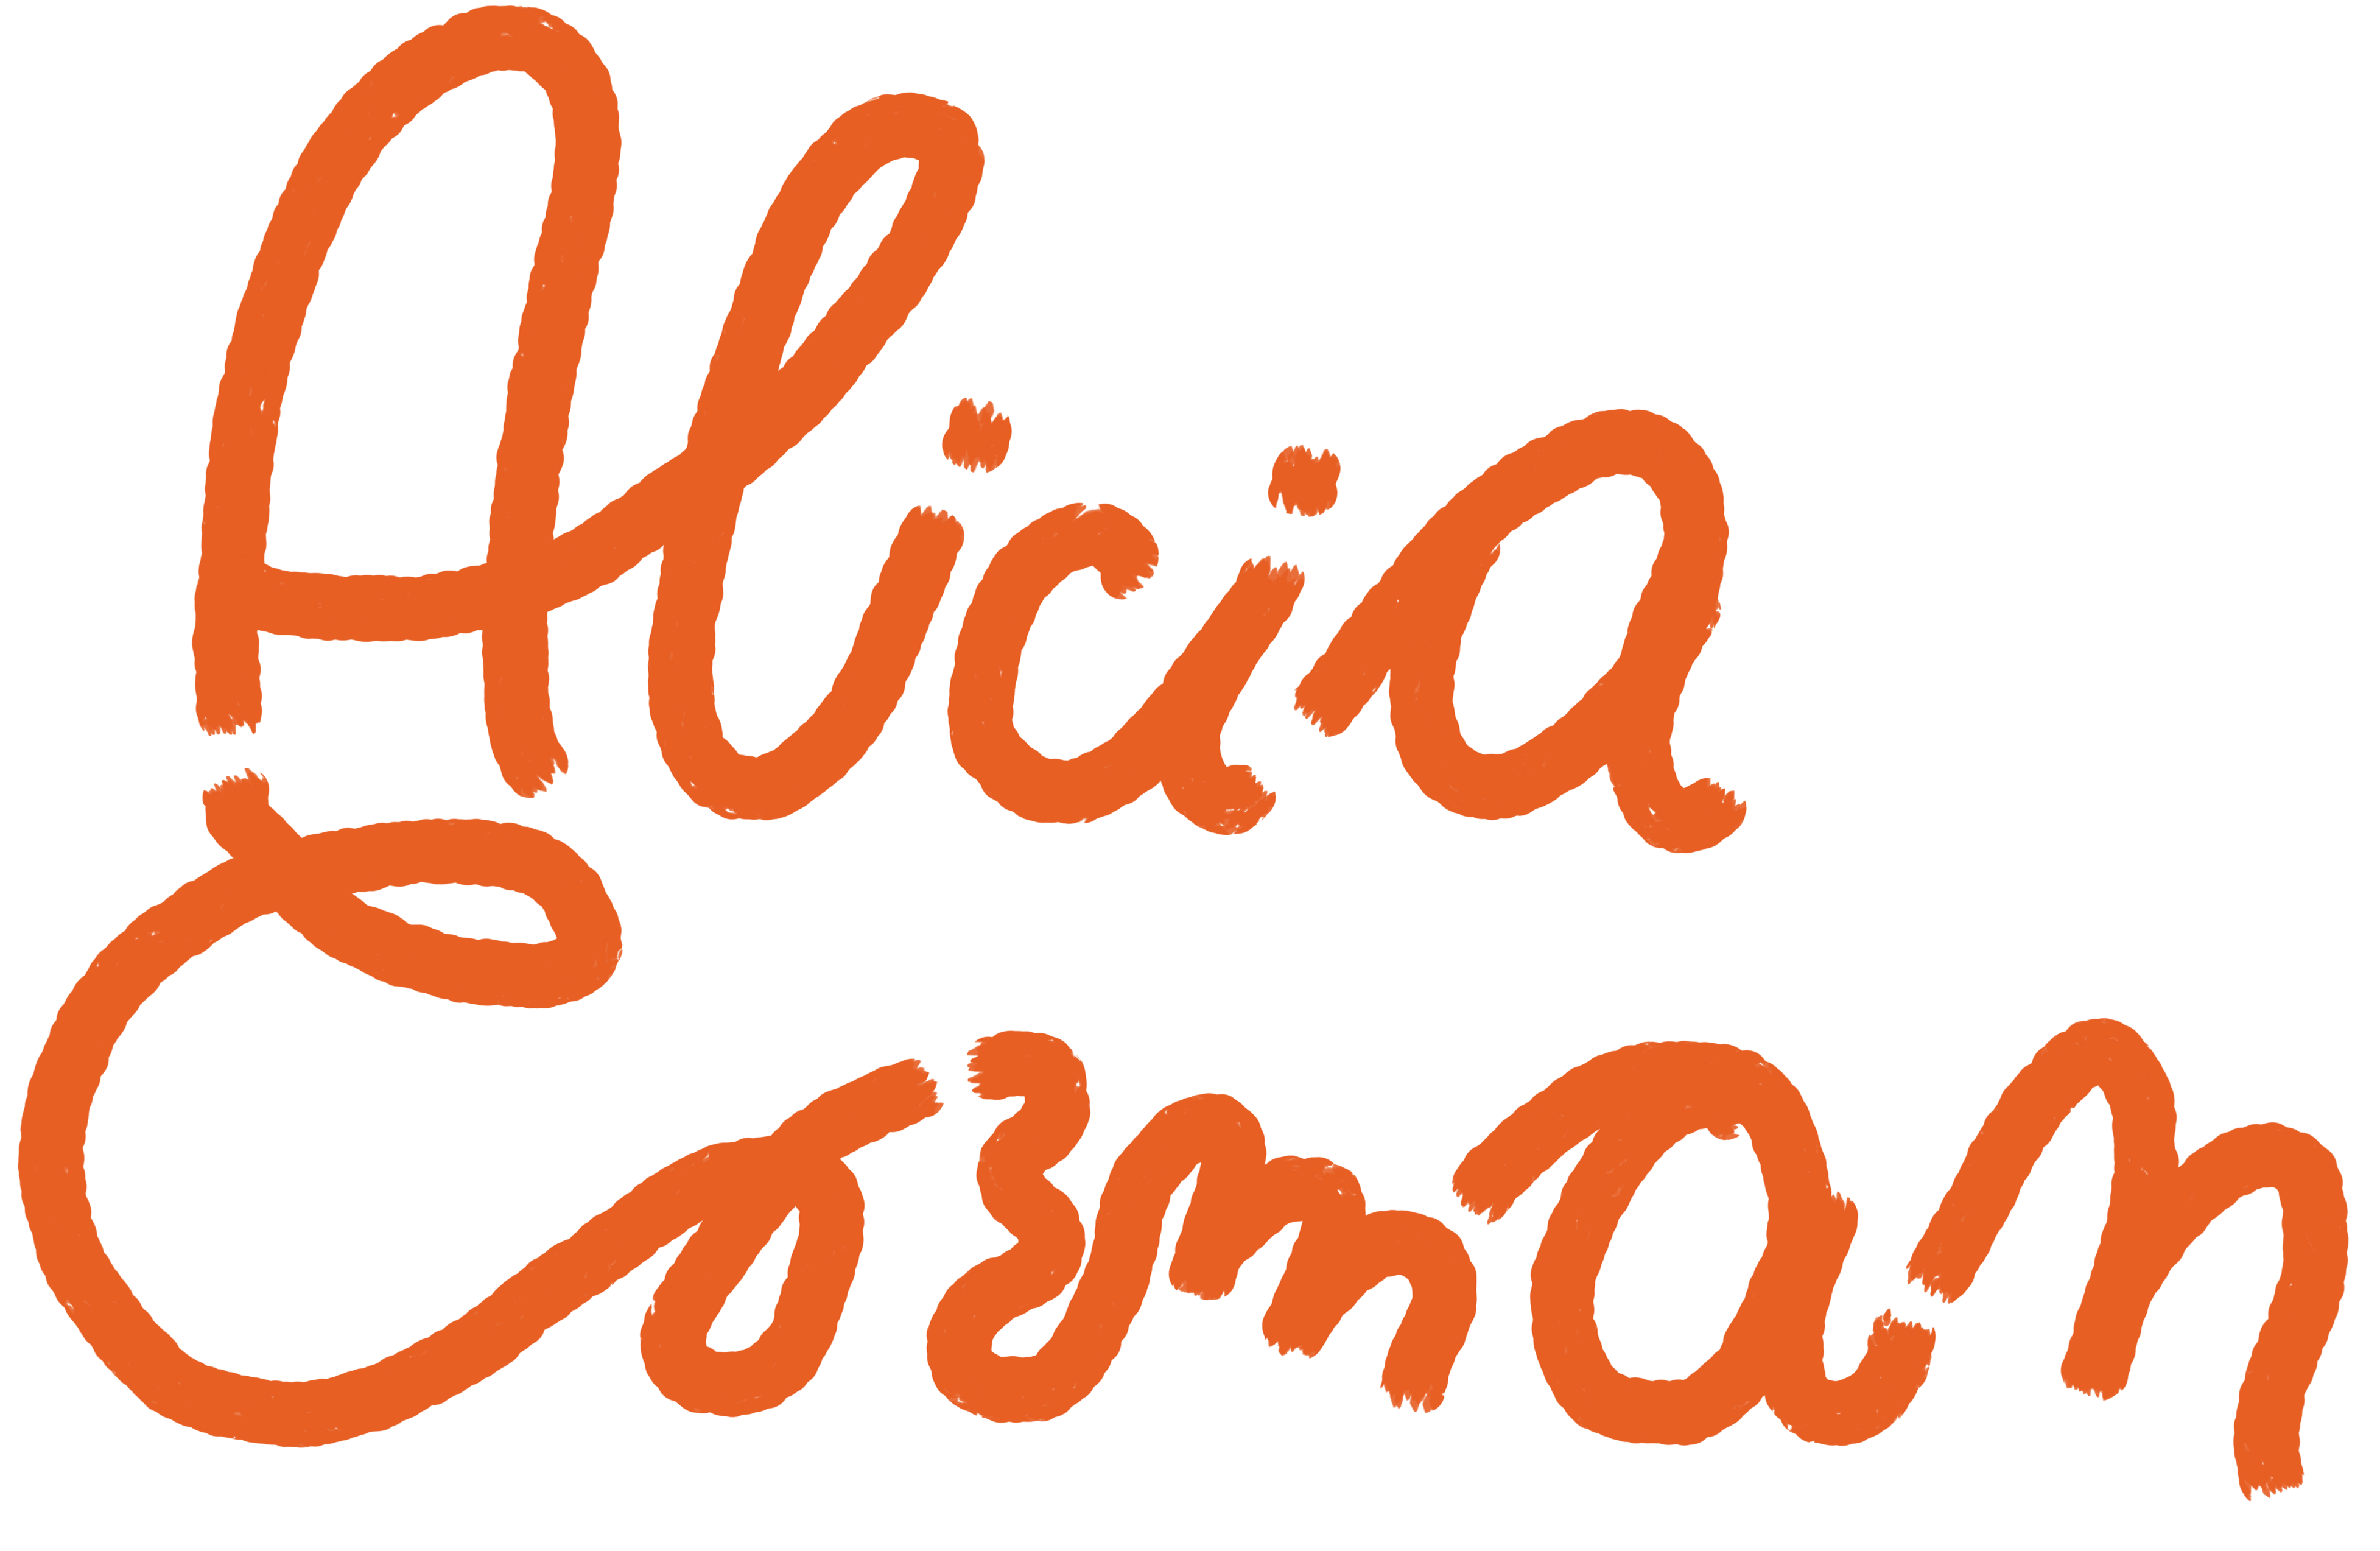 Alicia Corman